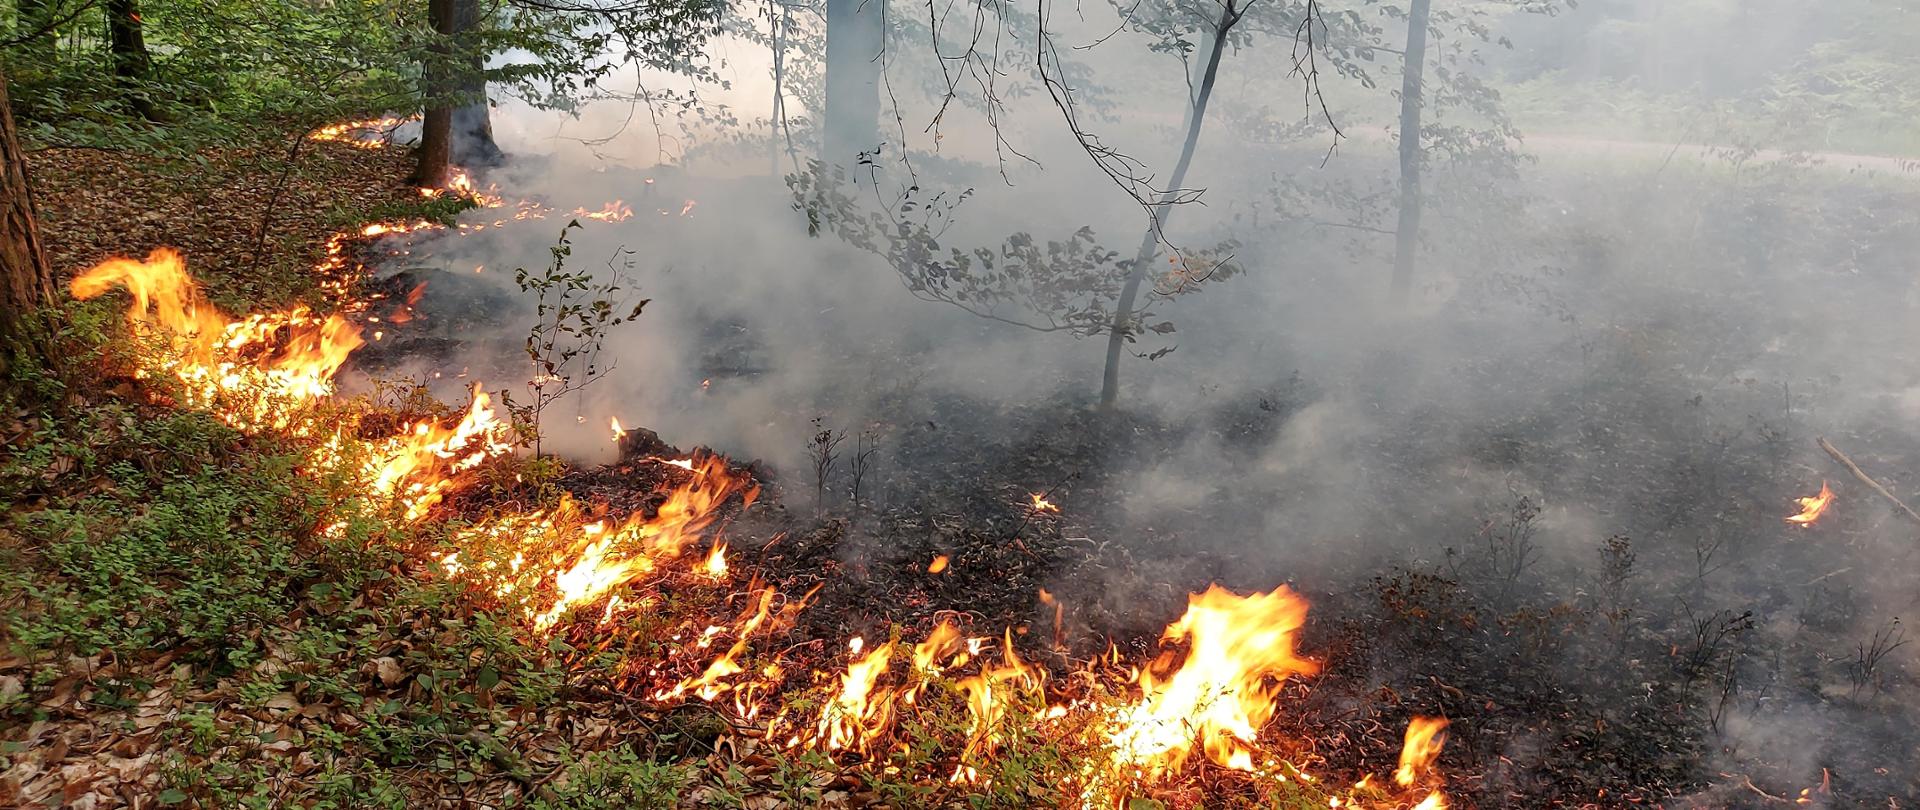 Zdjęcie przedstawia pożar poszycia leśnego.